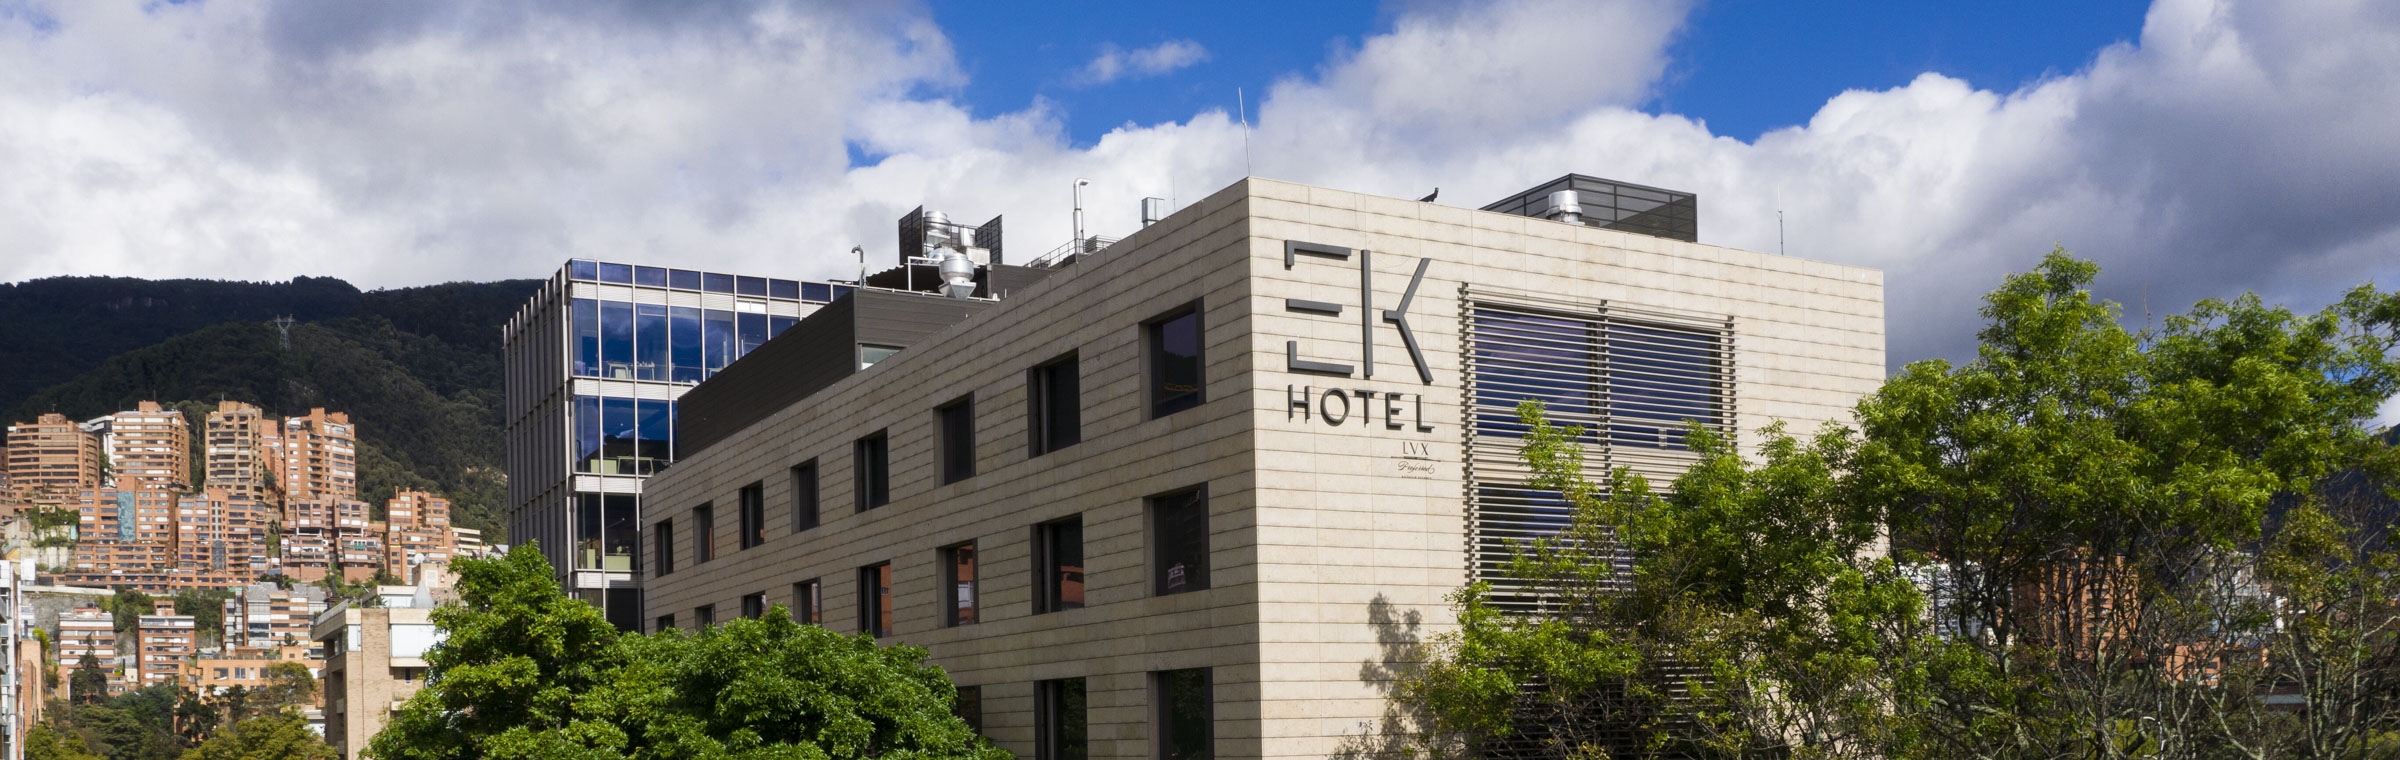 EK Hotel, in Bogota, Colombia - Preferred Hotels & Resorts